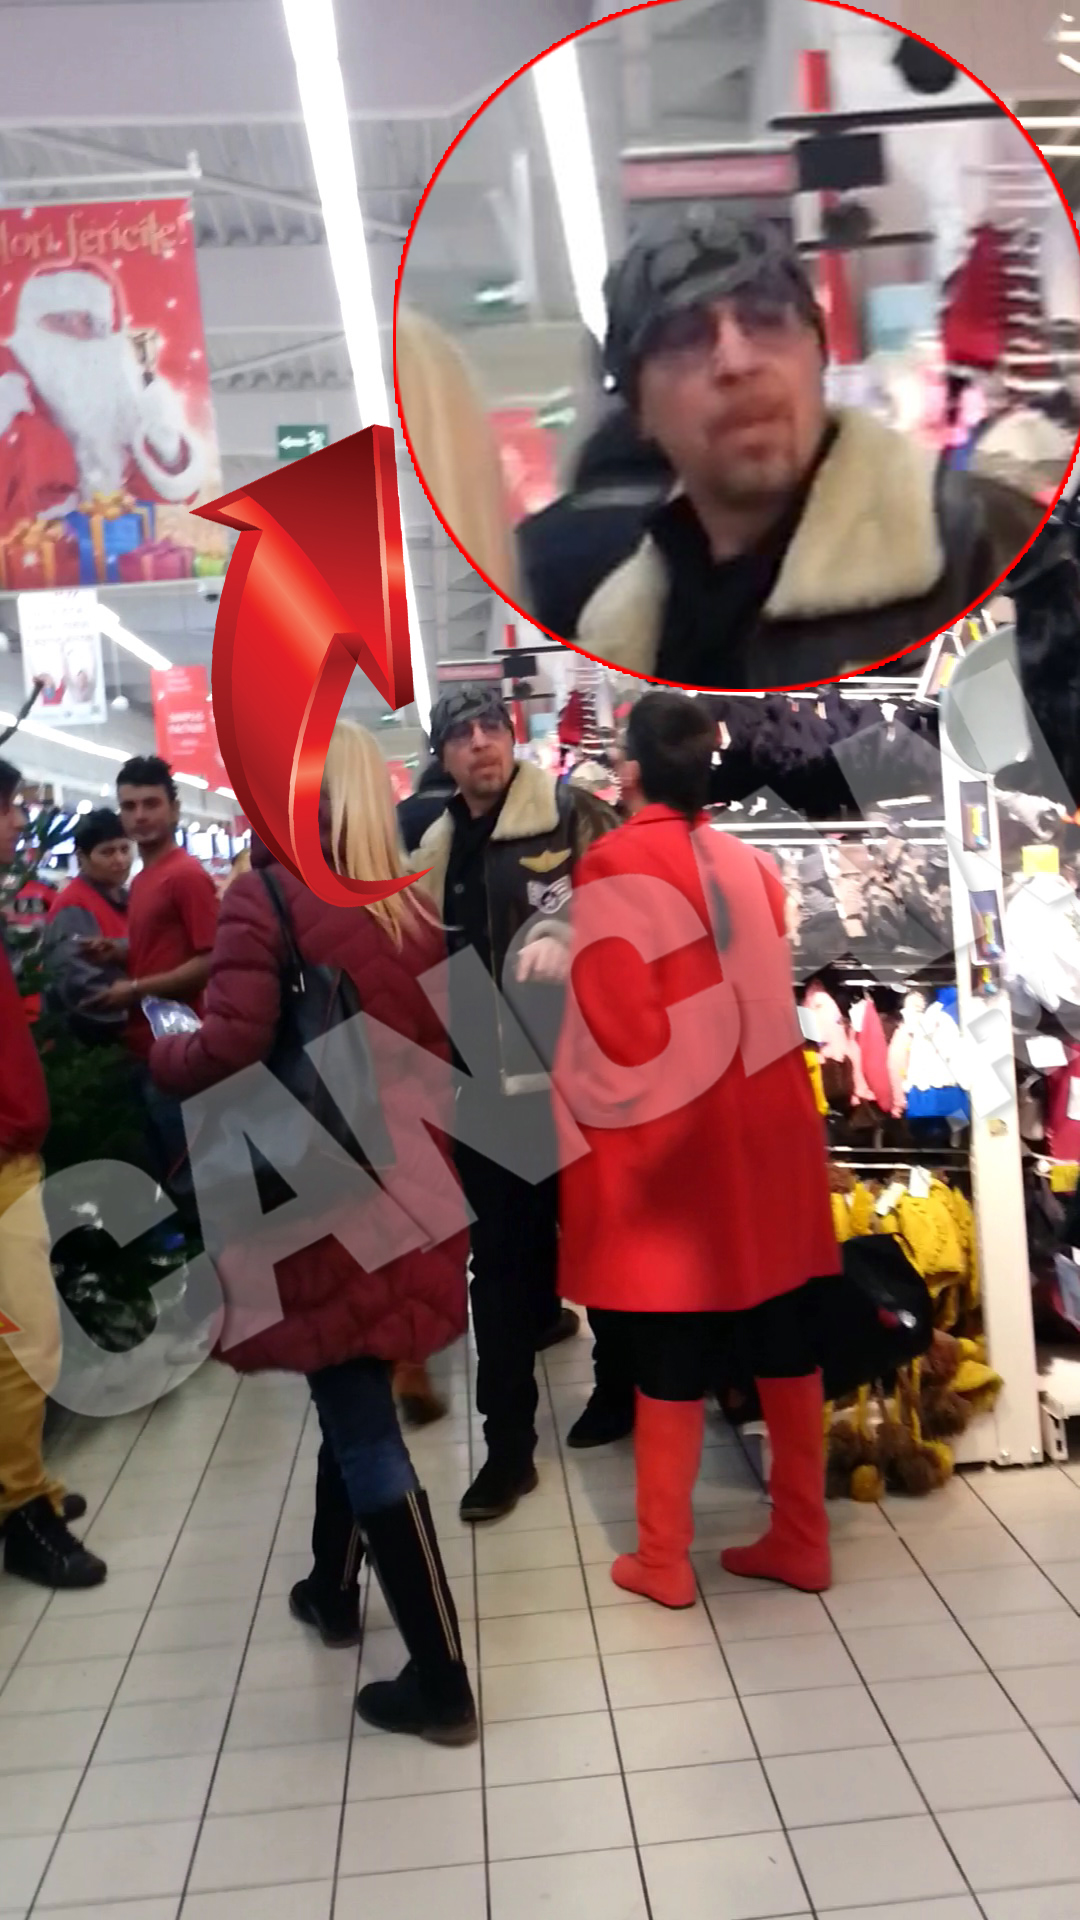 Mihai Pocorschi dadea semne de plictiseala inca din primele minute in care a intrat in mall